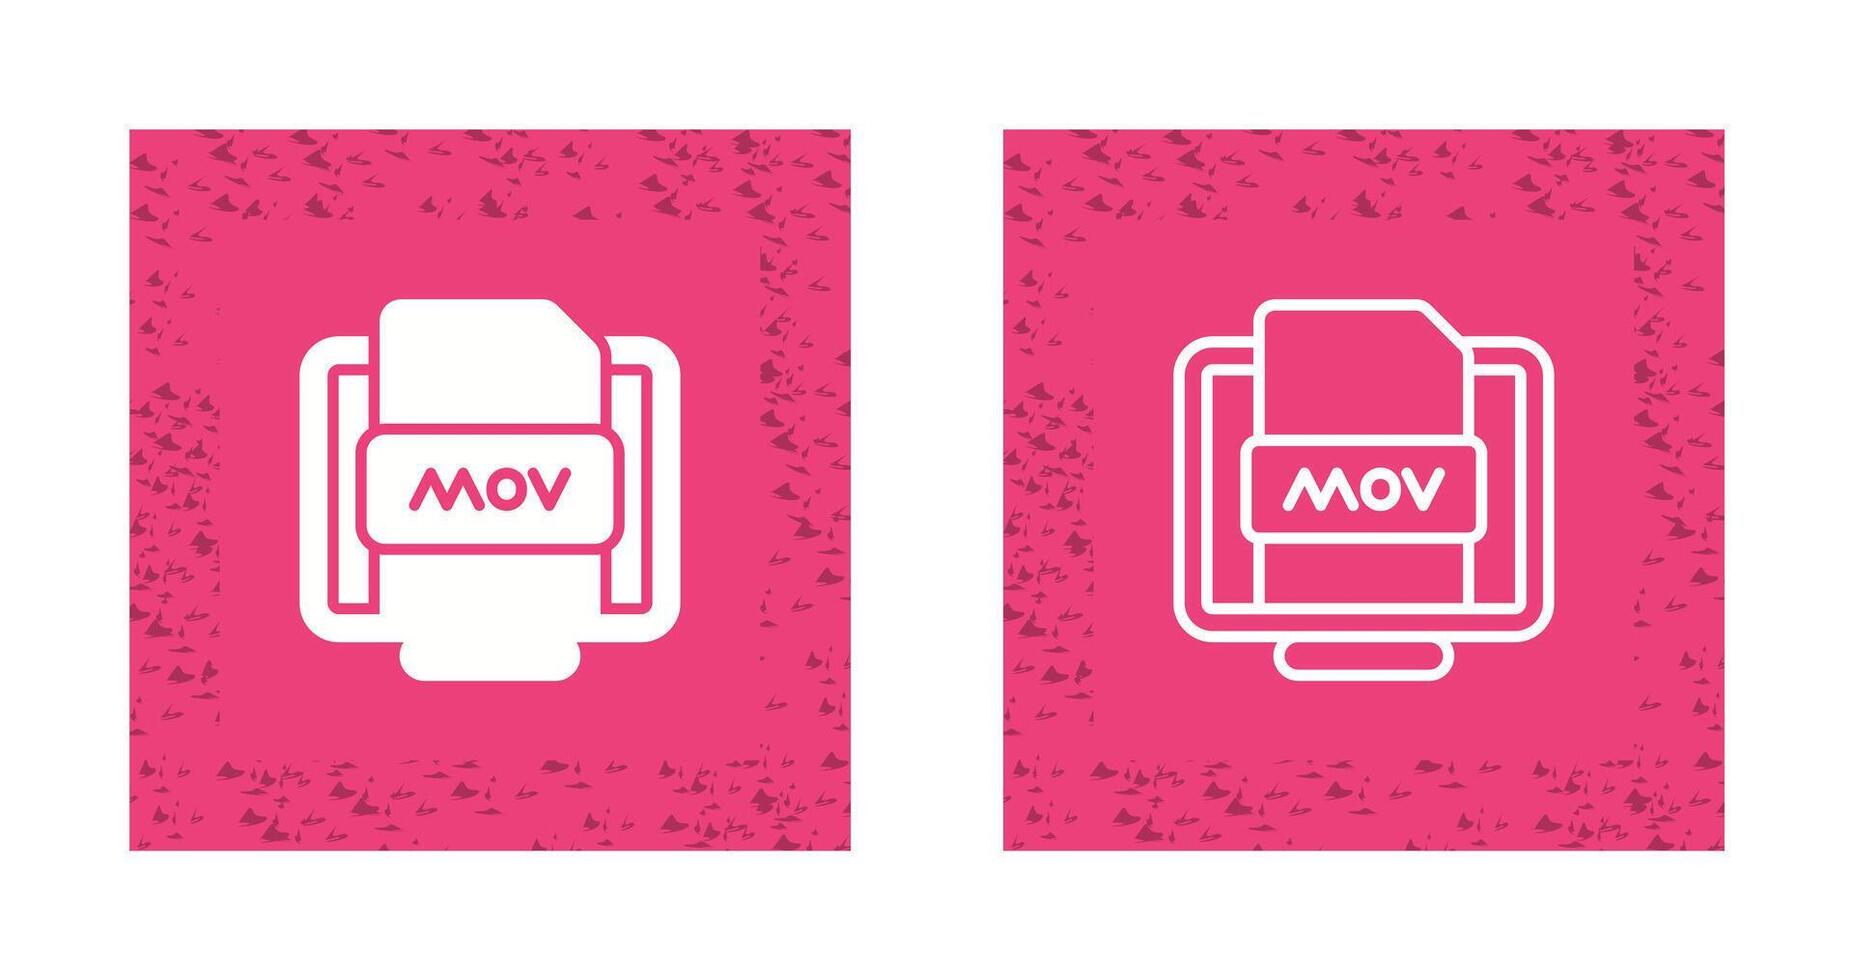 Mov File Vector Icon